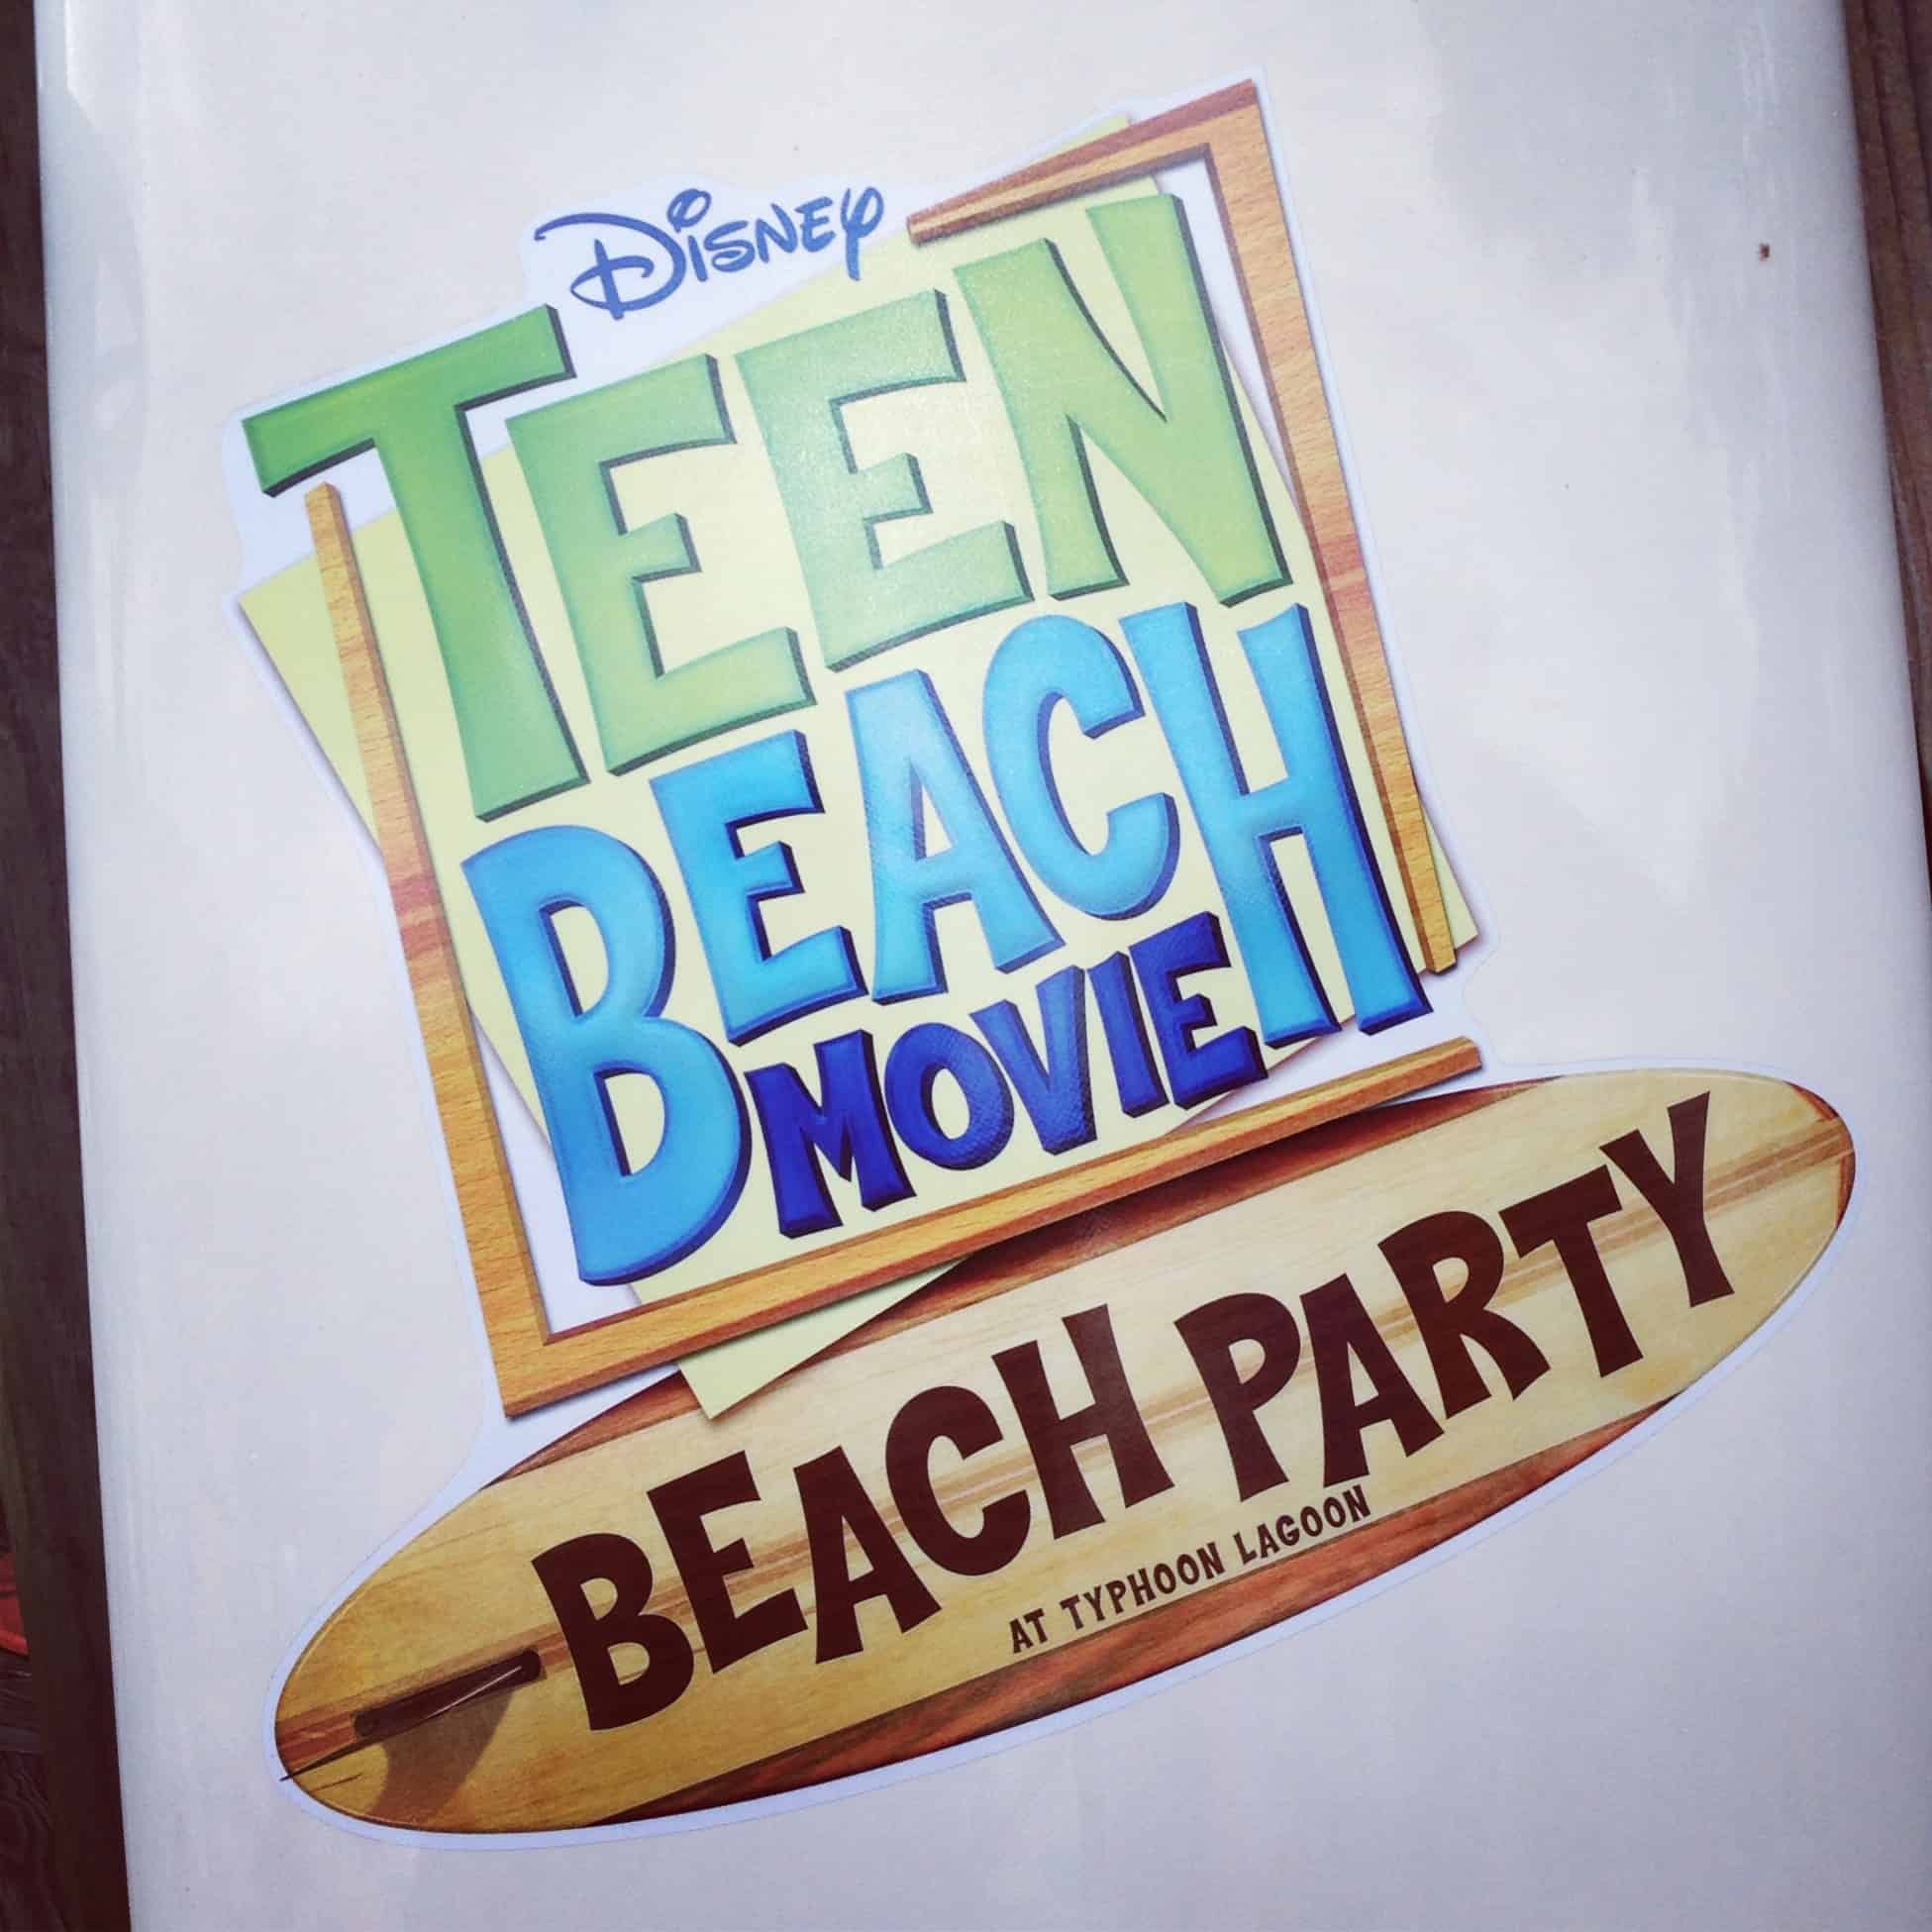 Teen Beach Movie Typhoon Lagoon